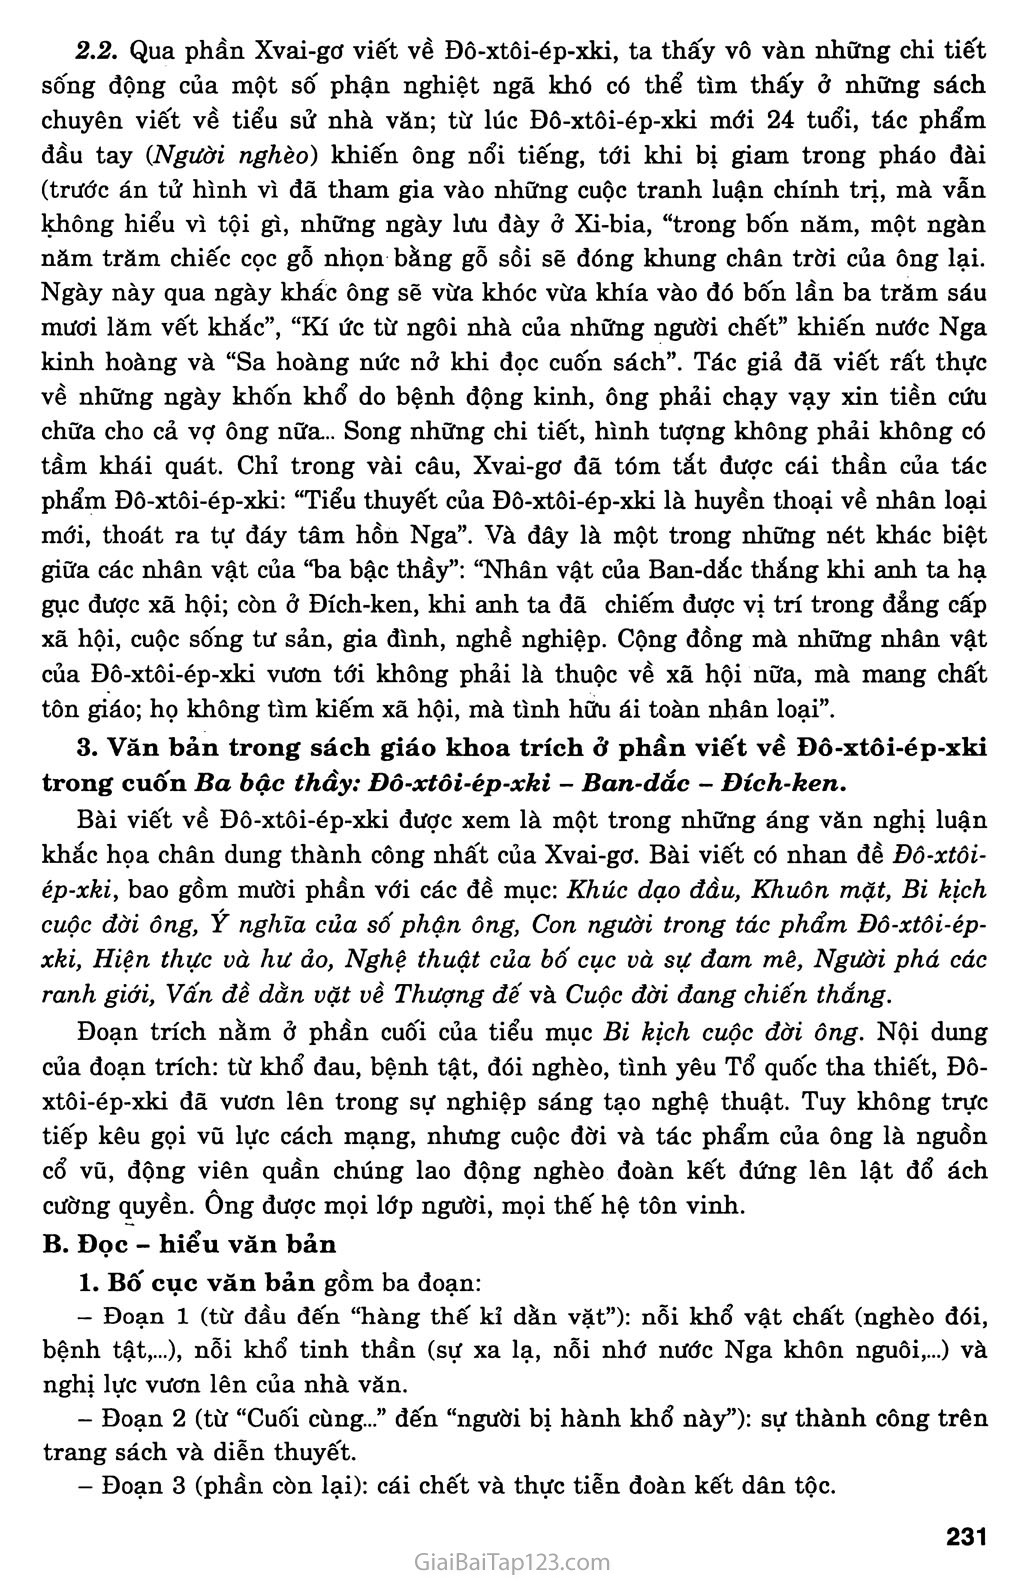 Đô - xtôi - ép - xki (Xvai - gơ) trang 2